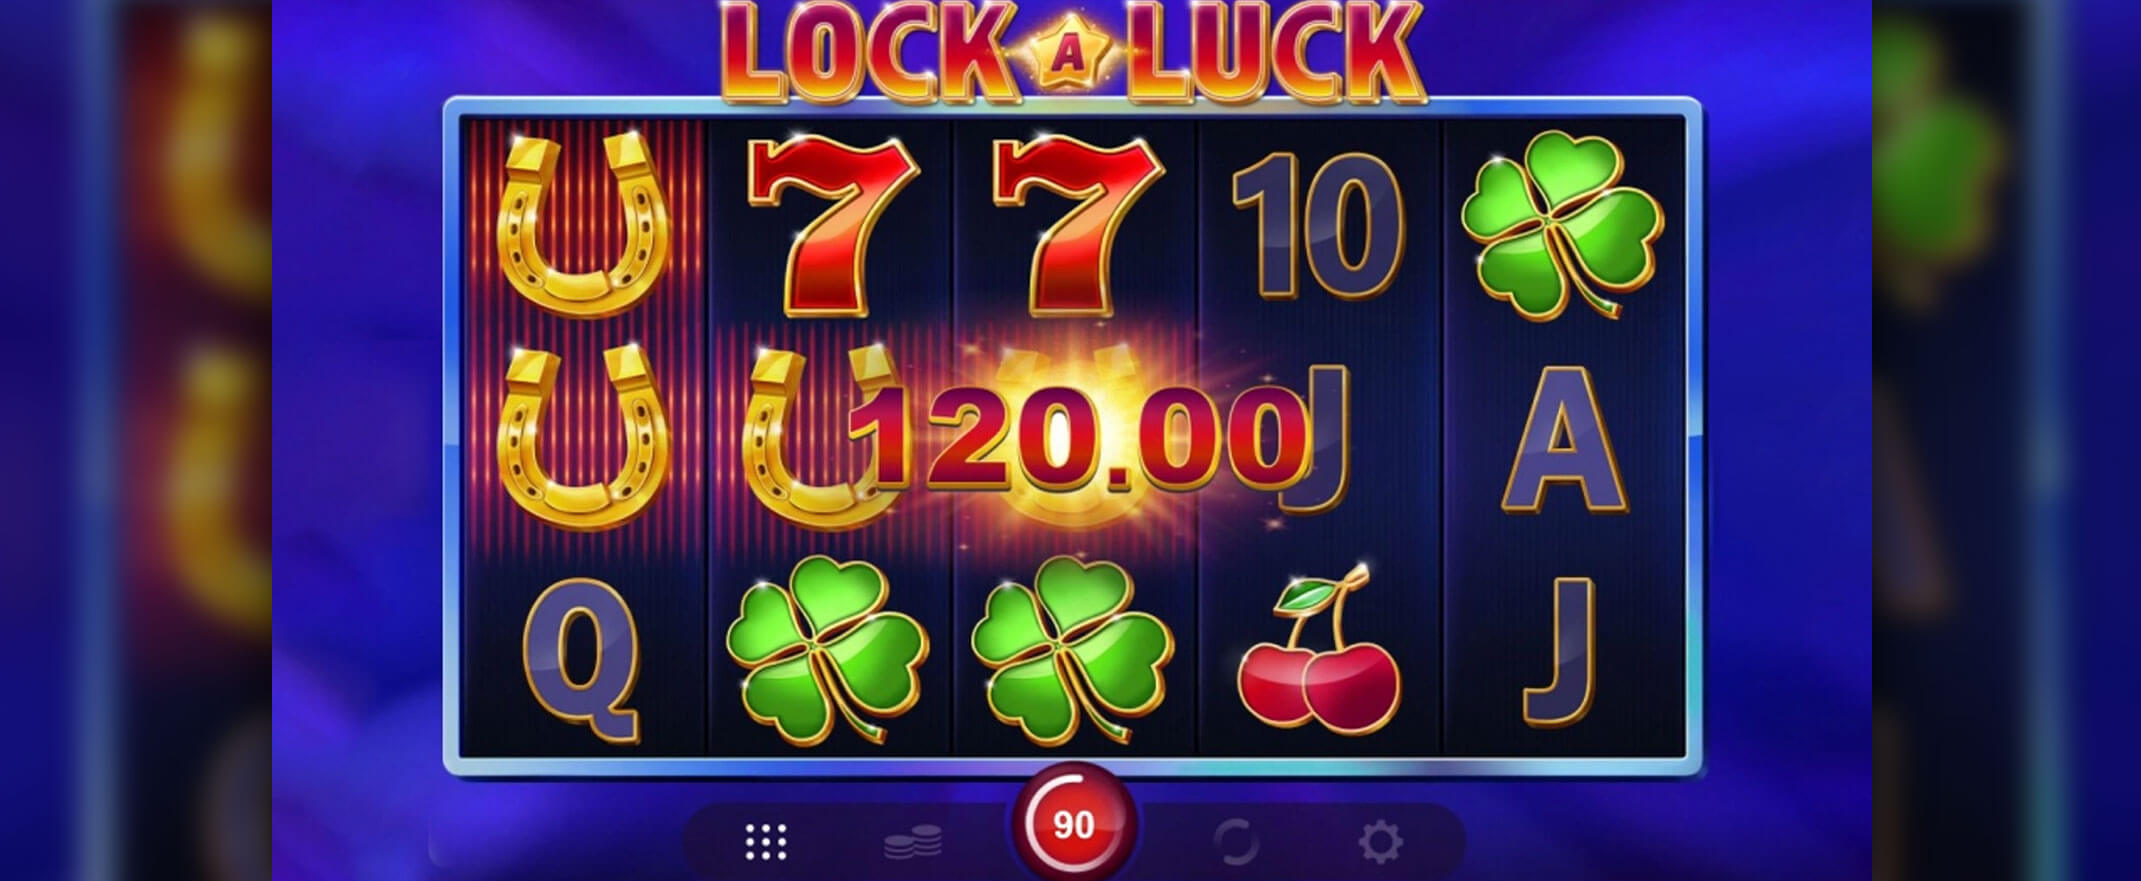 Lock A Luck Spielautomaten spielen